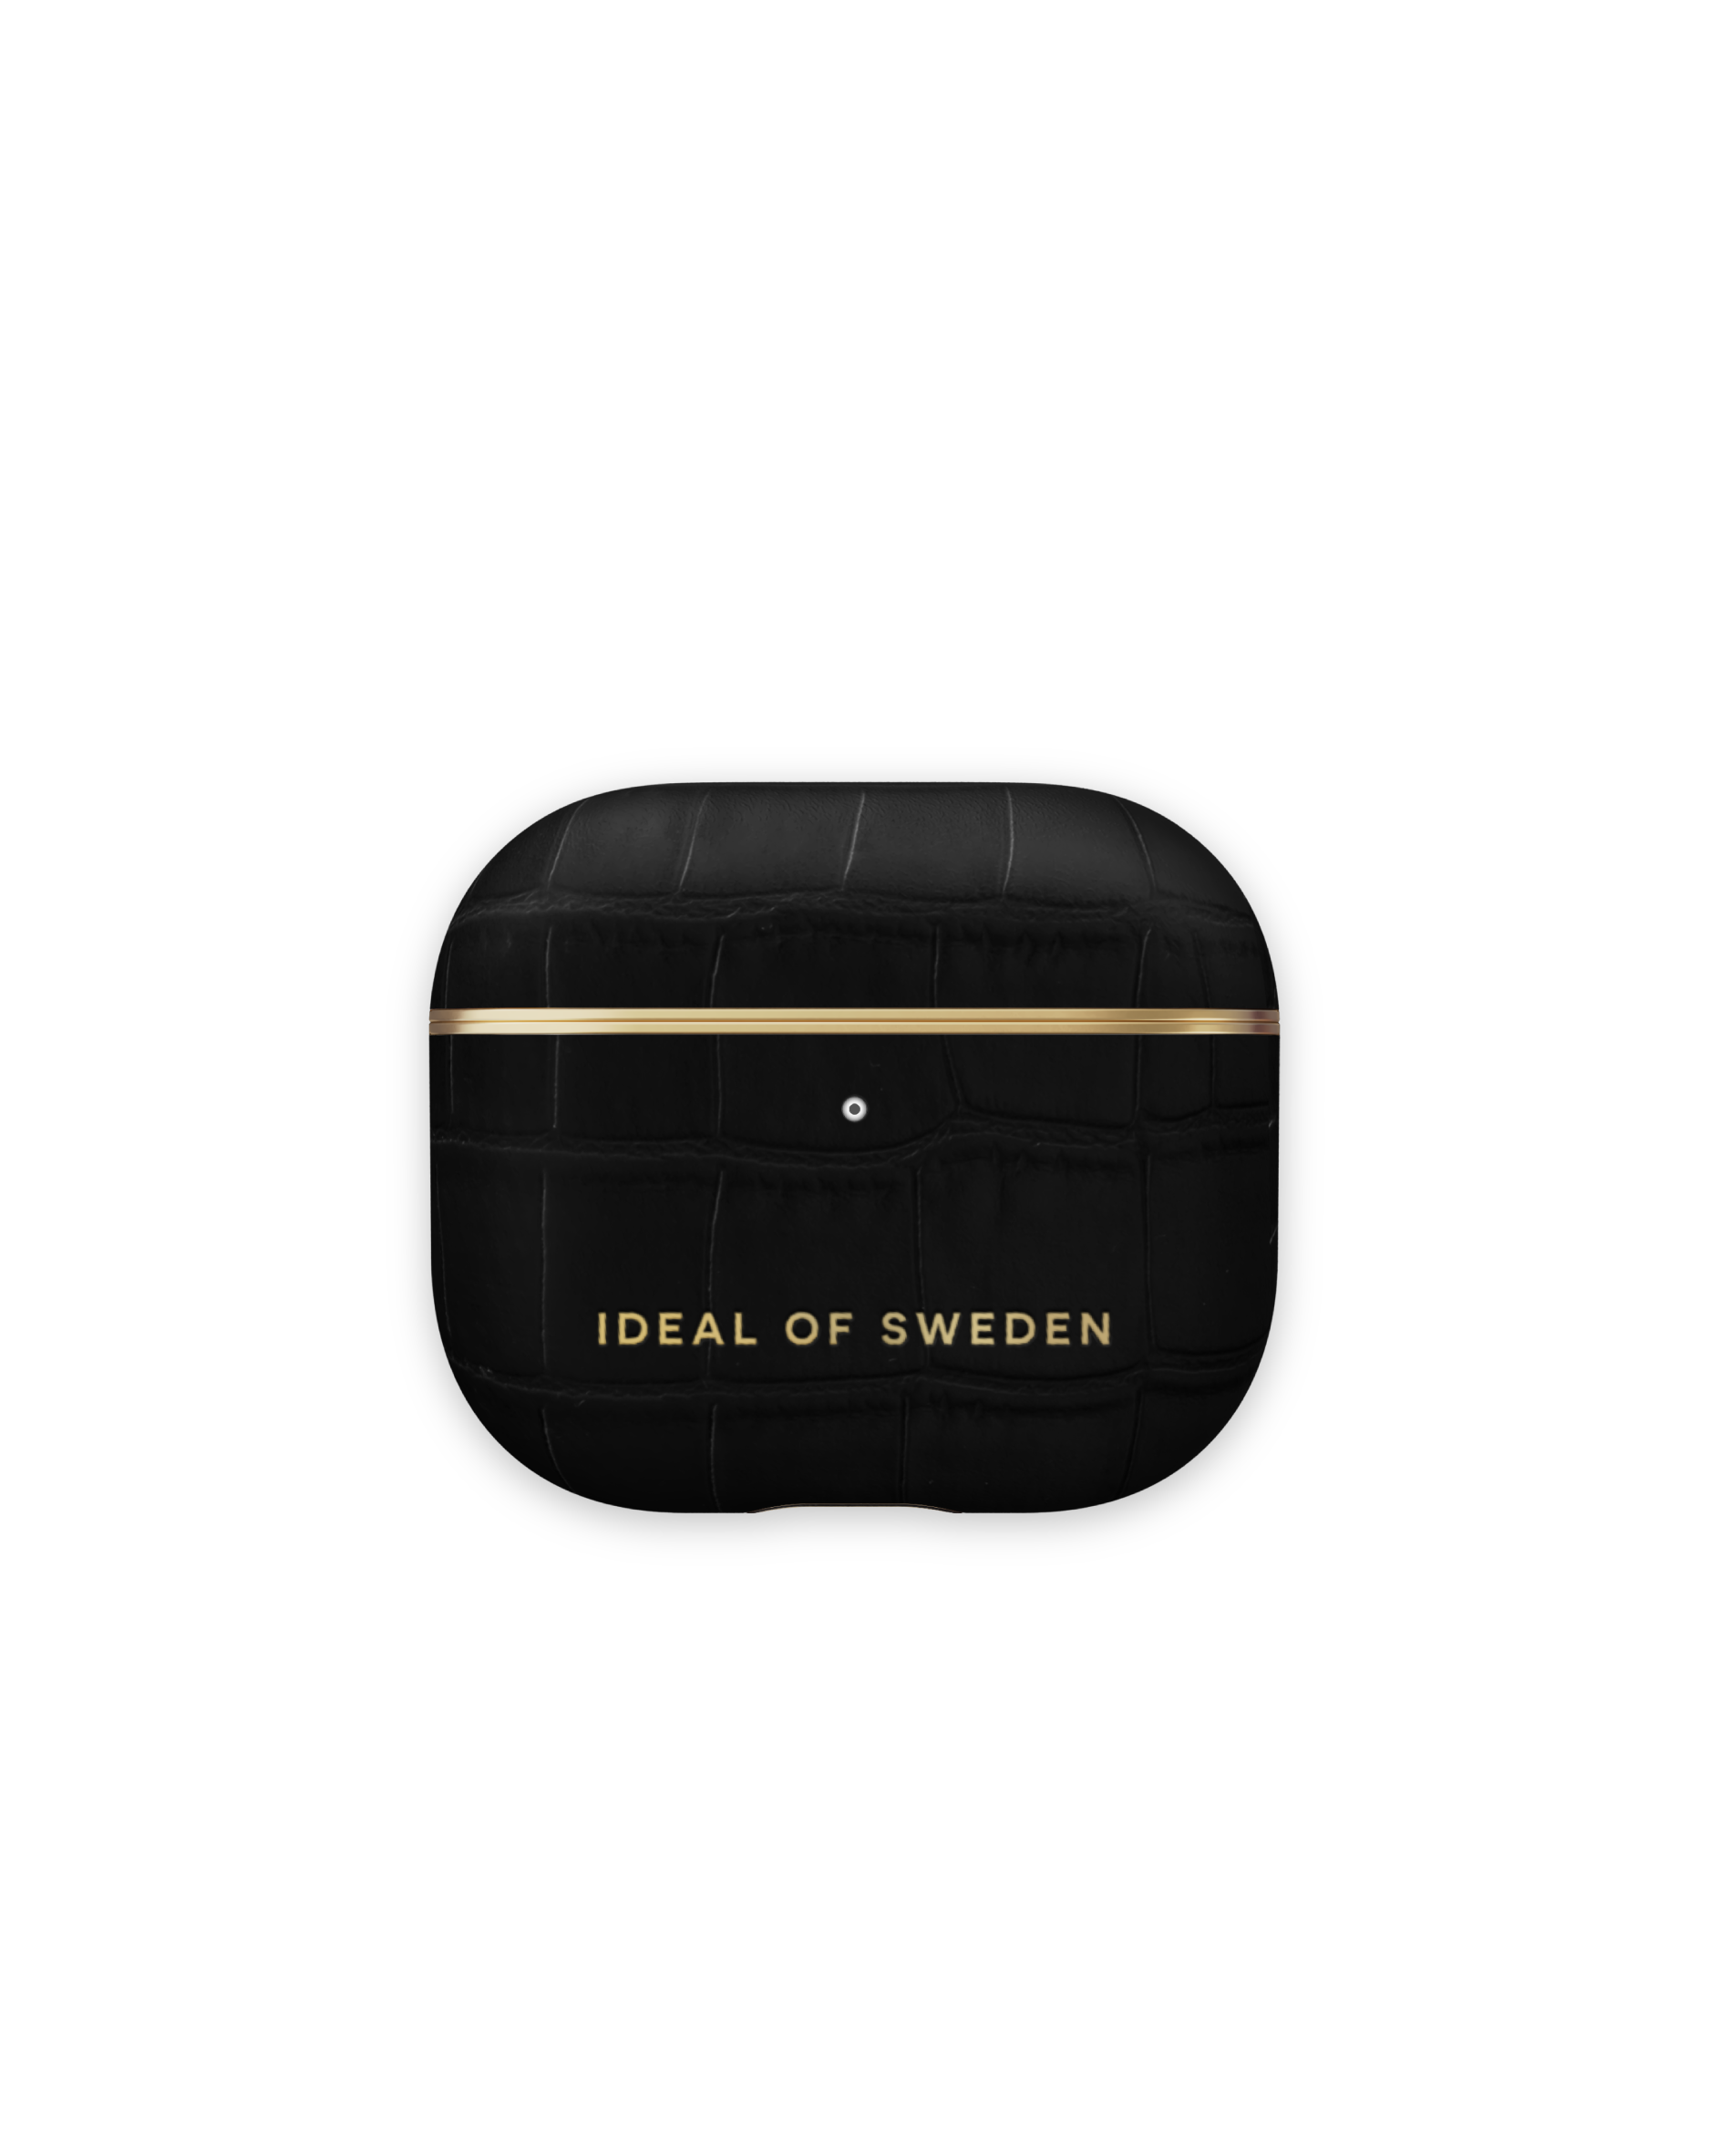 IDEAL OF SWEDEN IDFAPC-G4-207 für: Croco passend CaseKopfhörer-Schutzhülle Black AirPod Apple